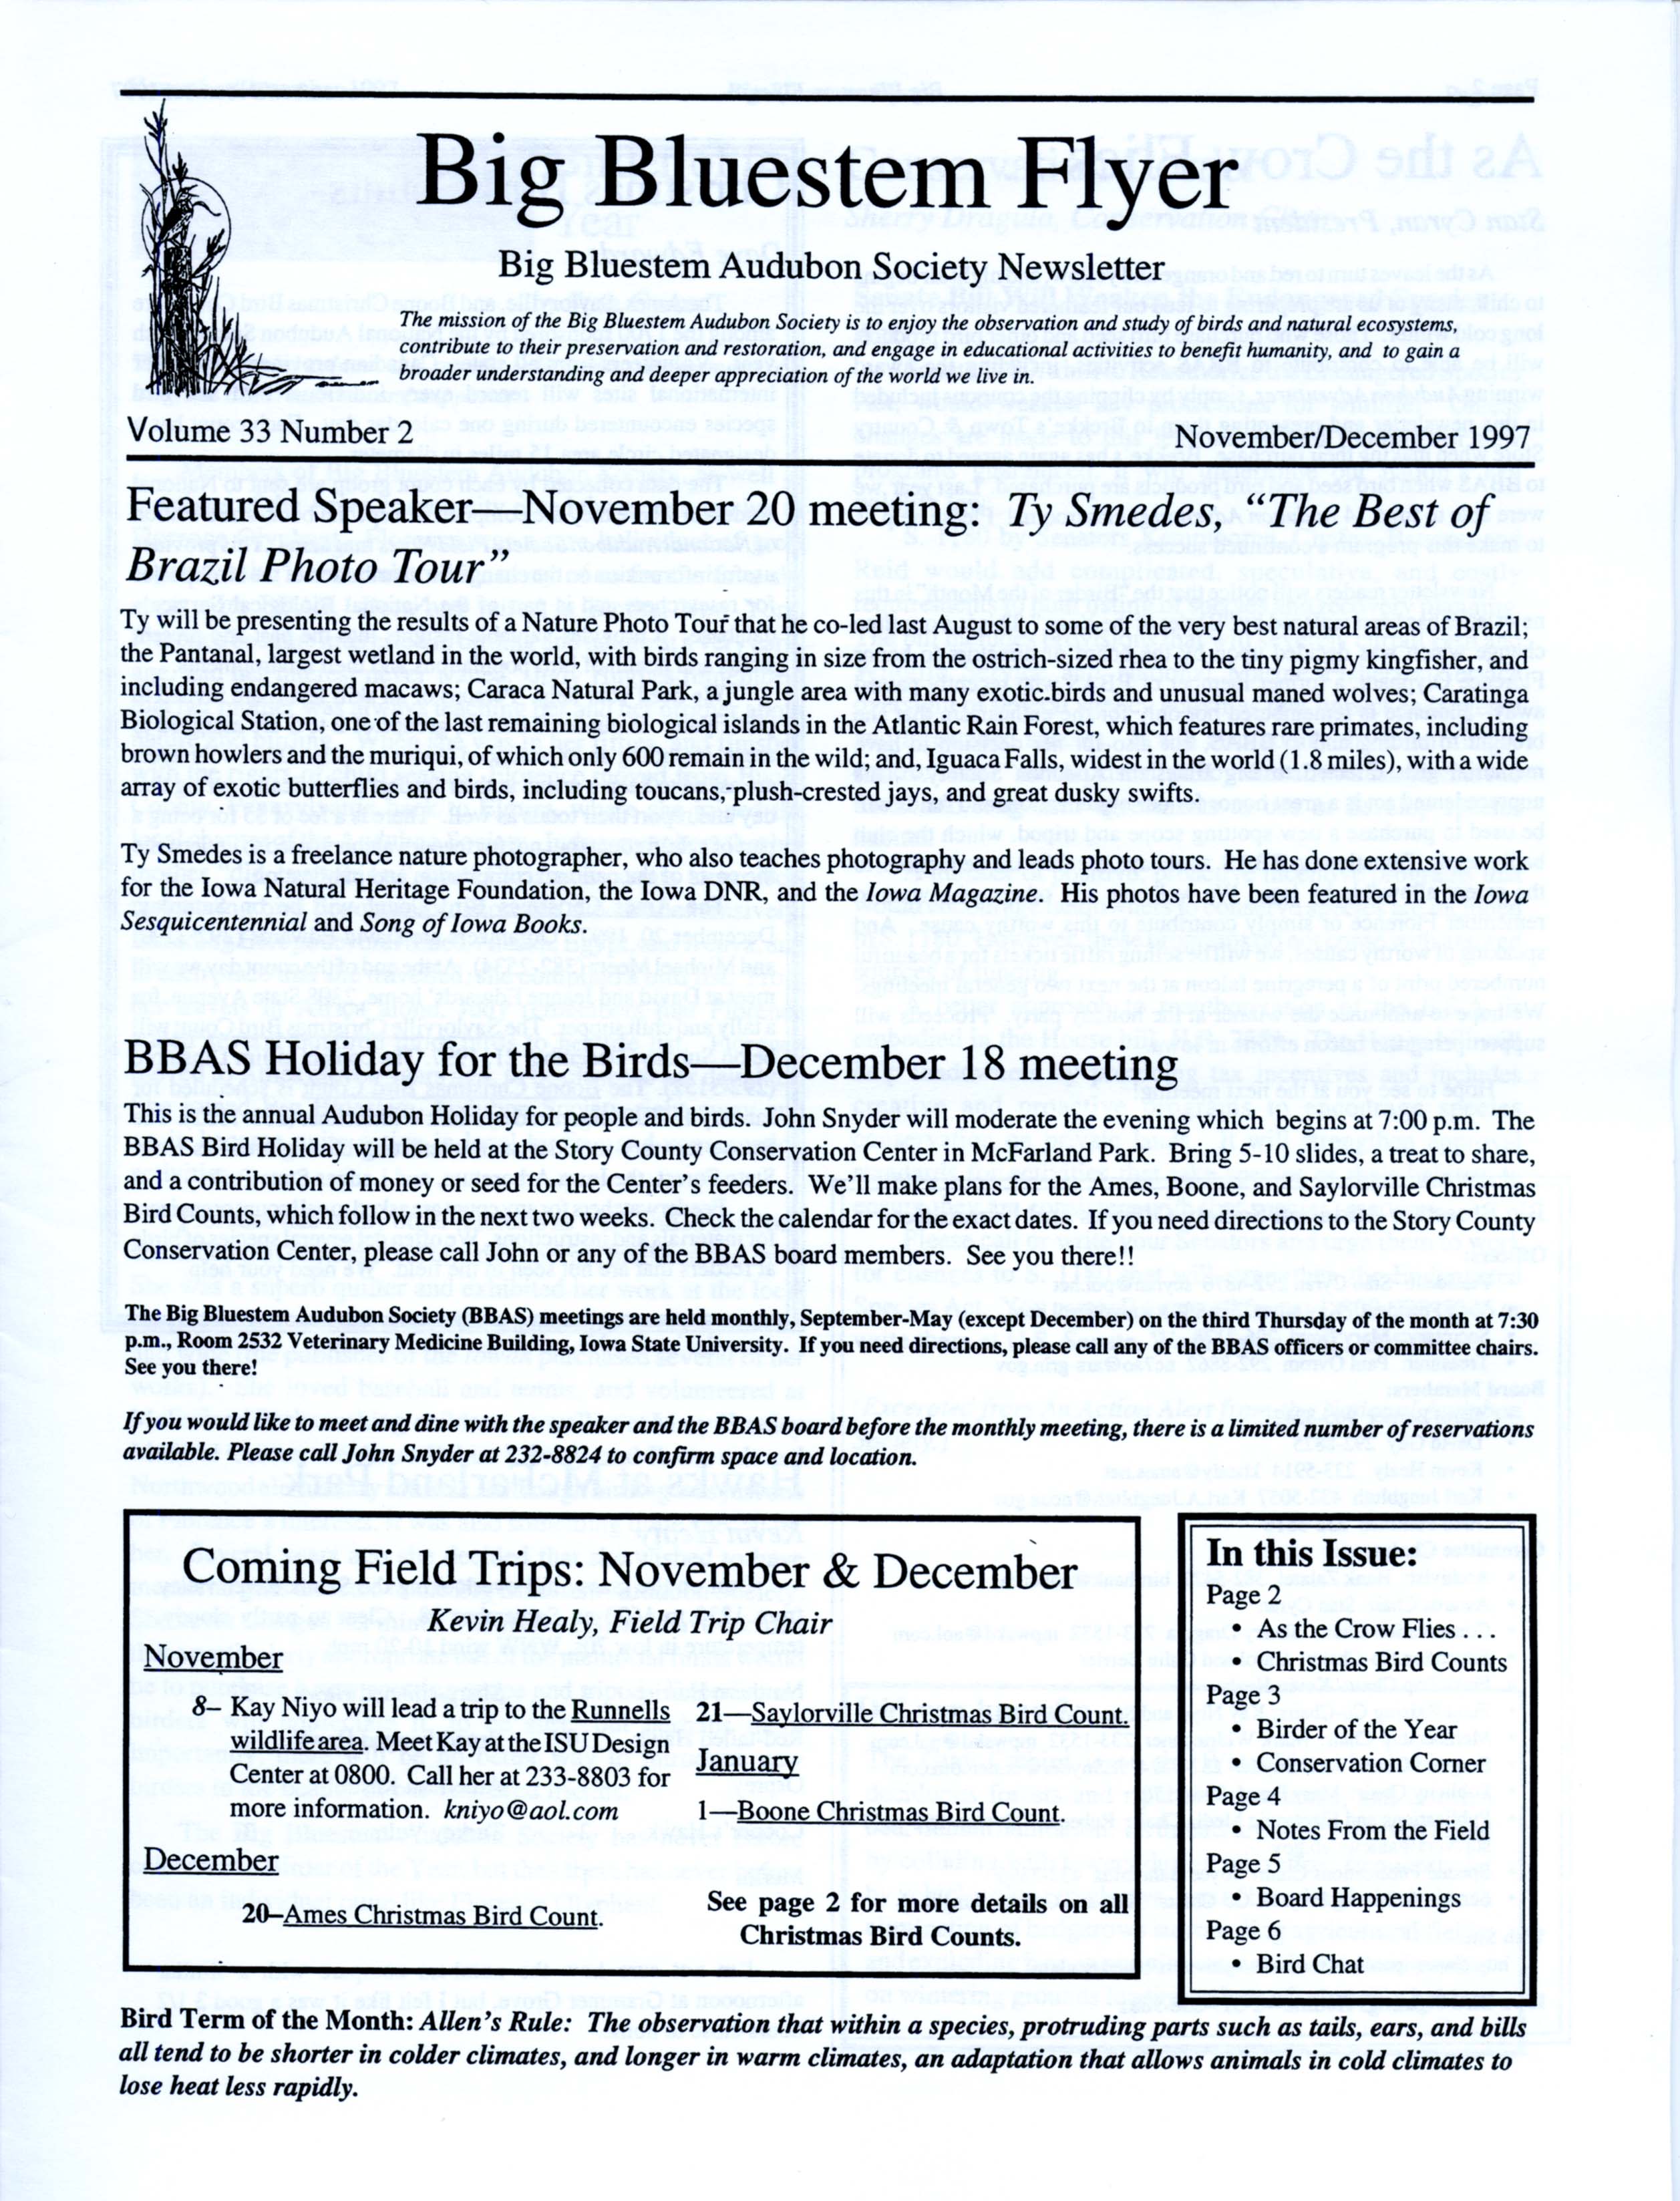 Big Bluestem Flyer, Volume 33, Number 2, November/December 1997